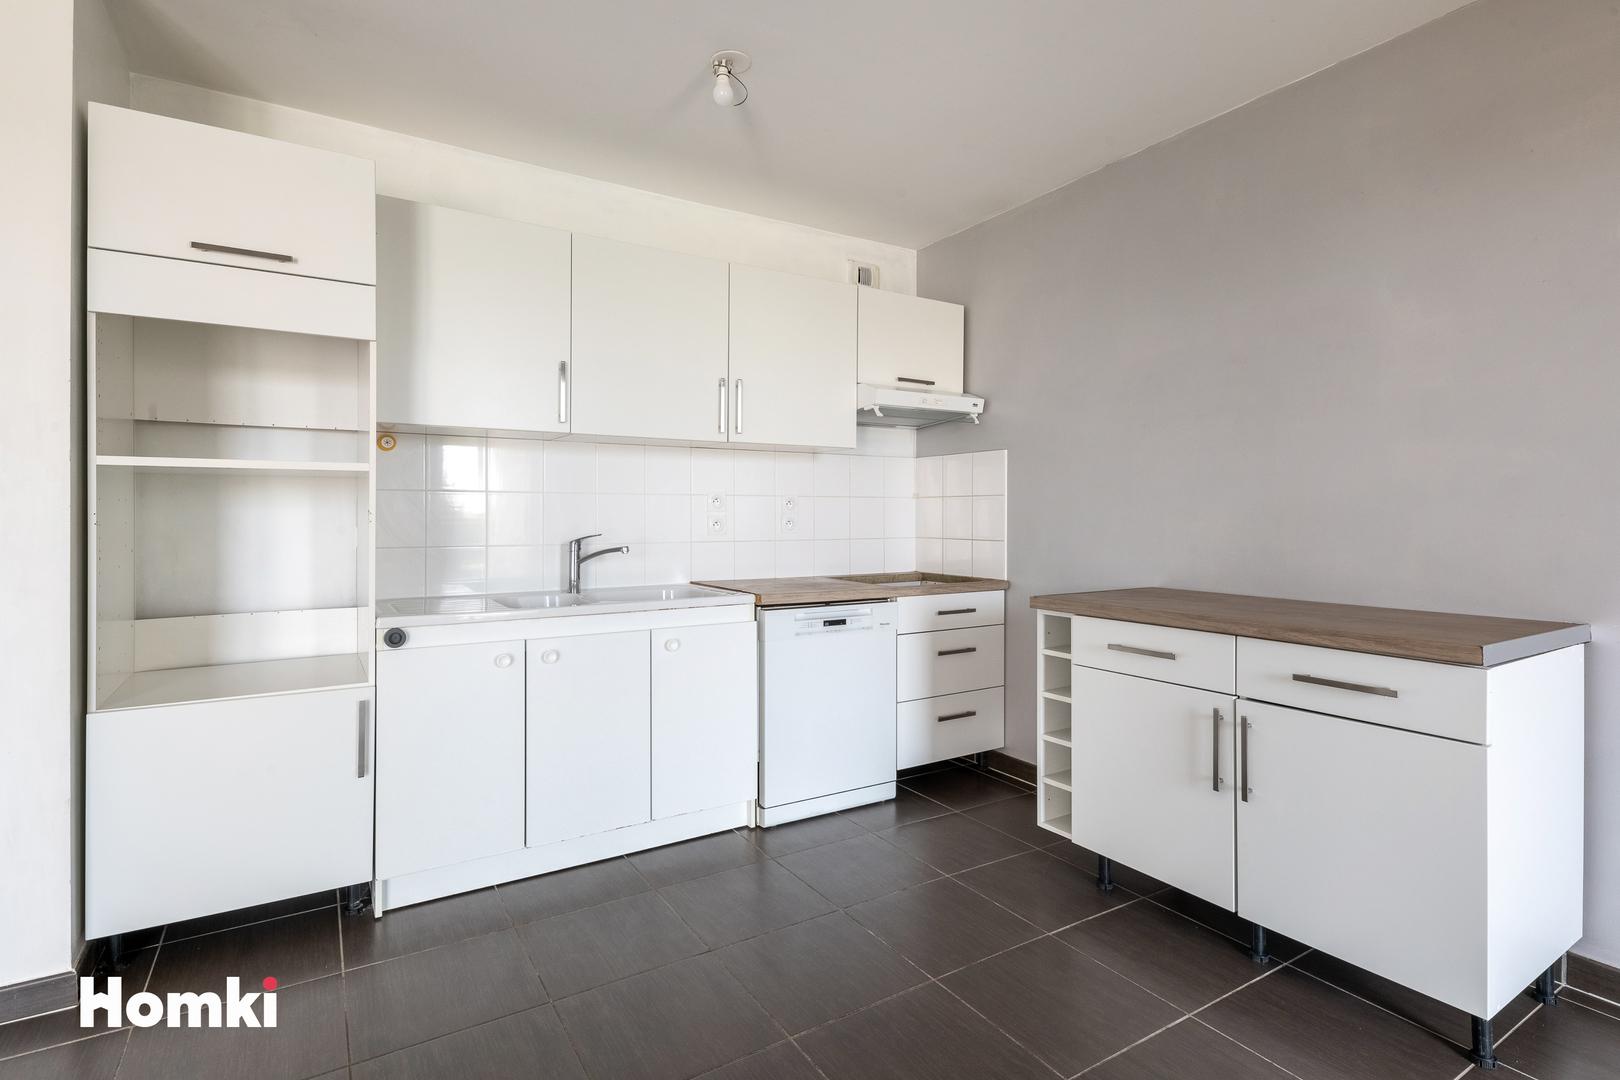 Homki - Vente Appartement  de 71.0 m² à Caluire-et-Cuire 69300